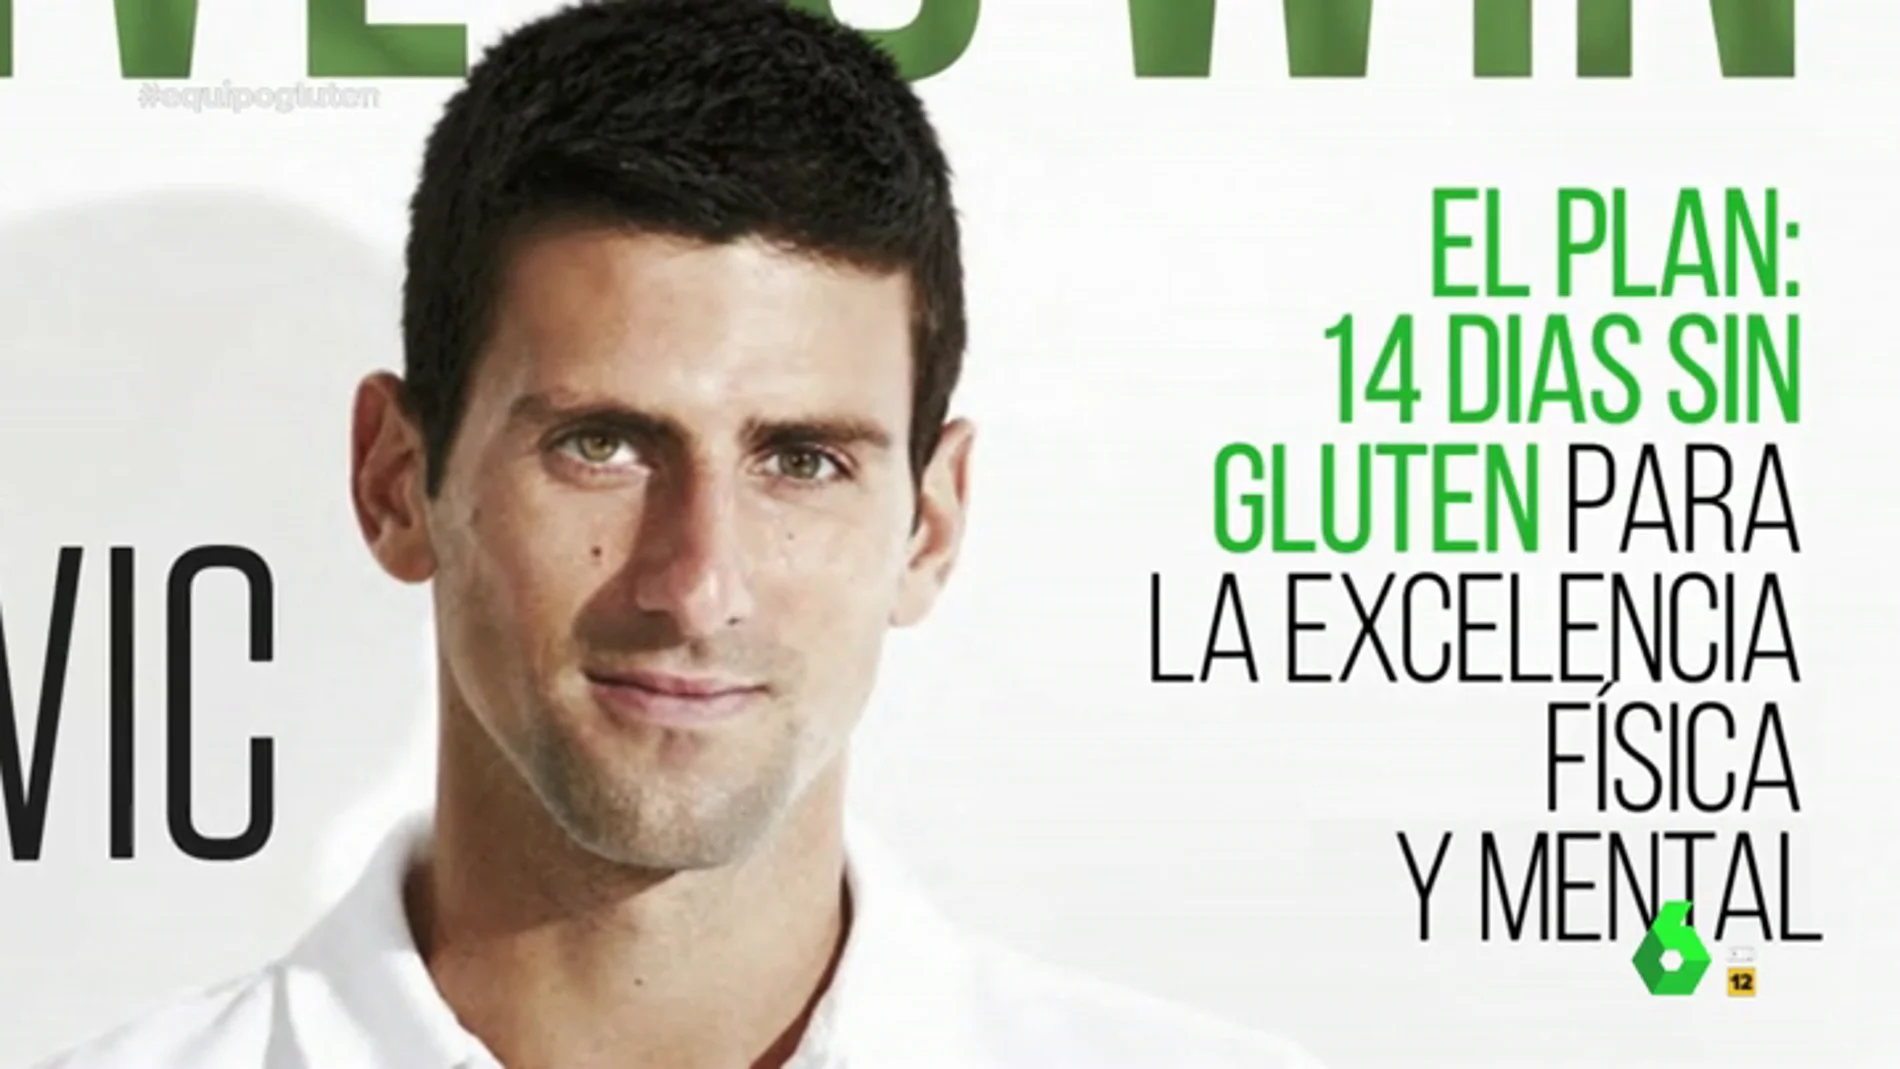 Djokovic, el tenista que desató el fenómeno sin gluten